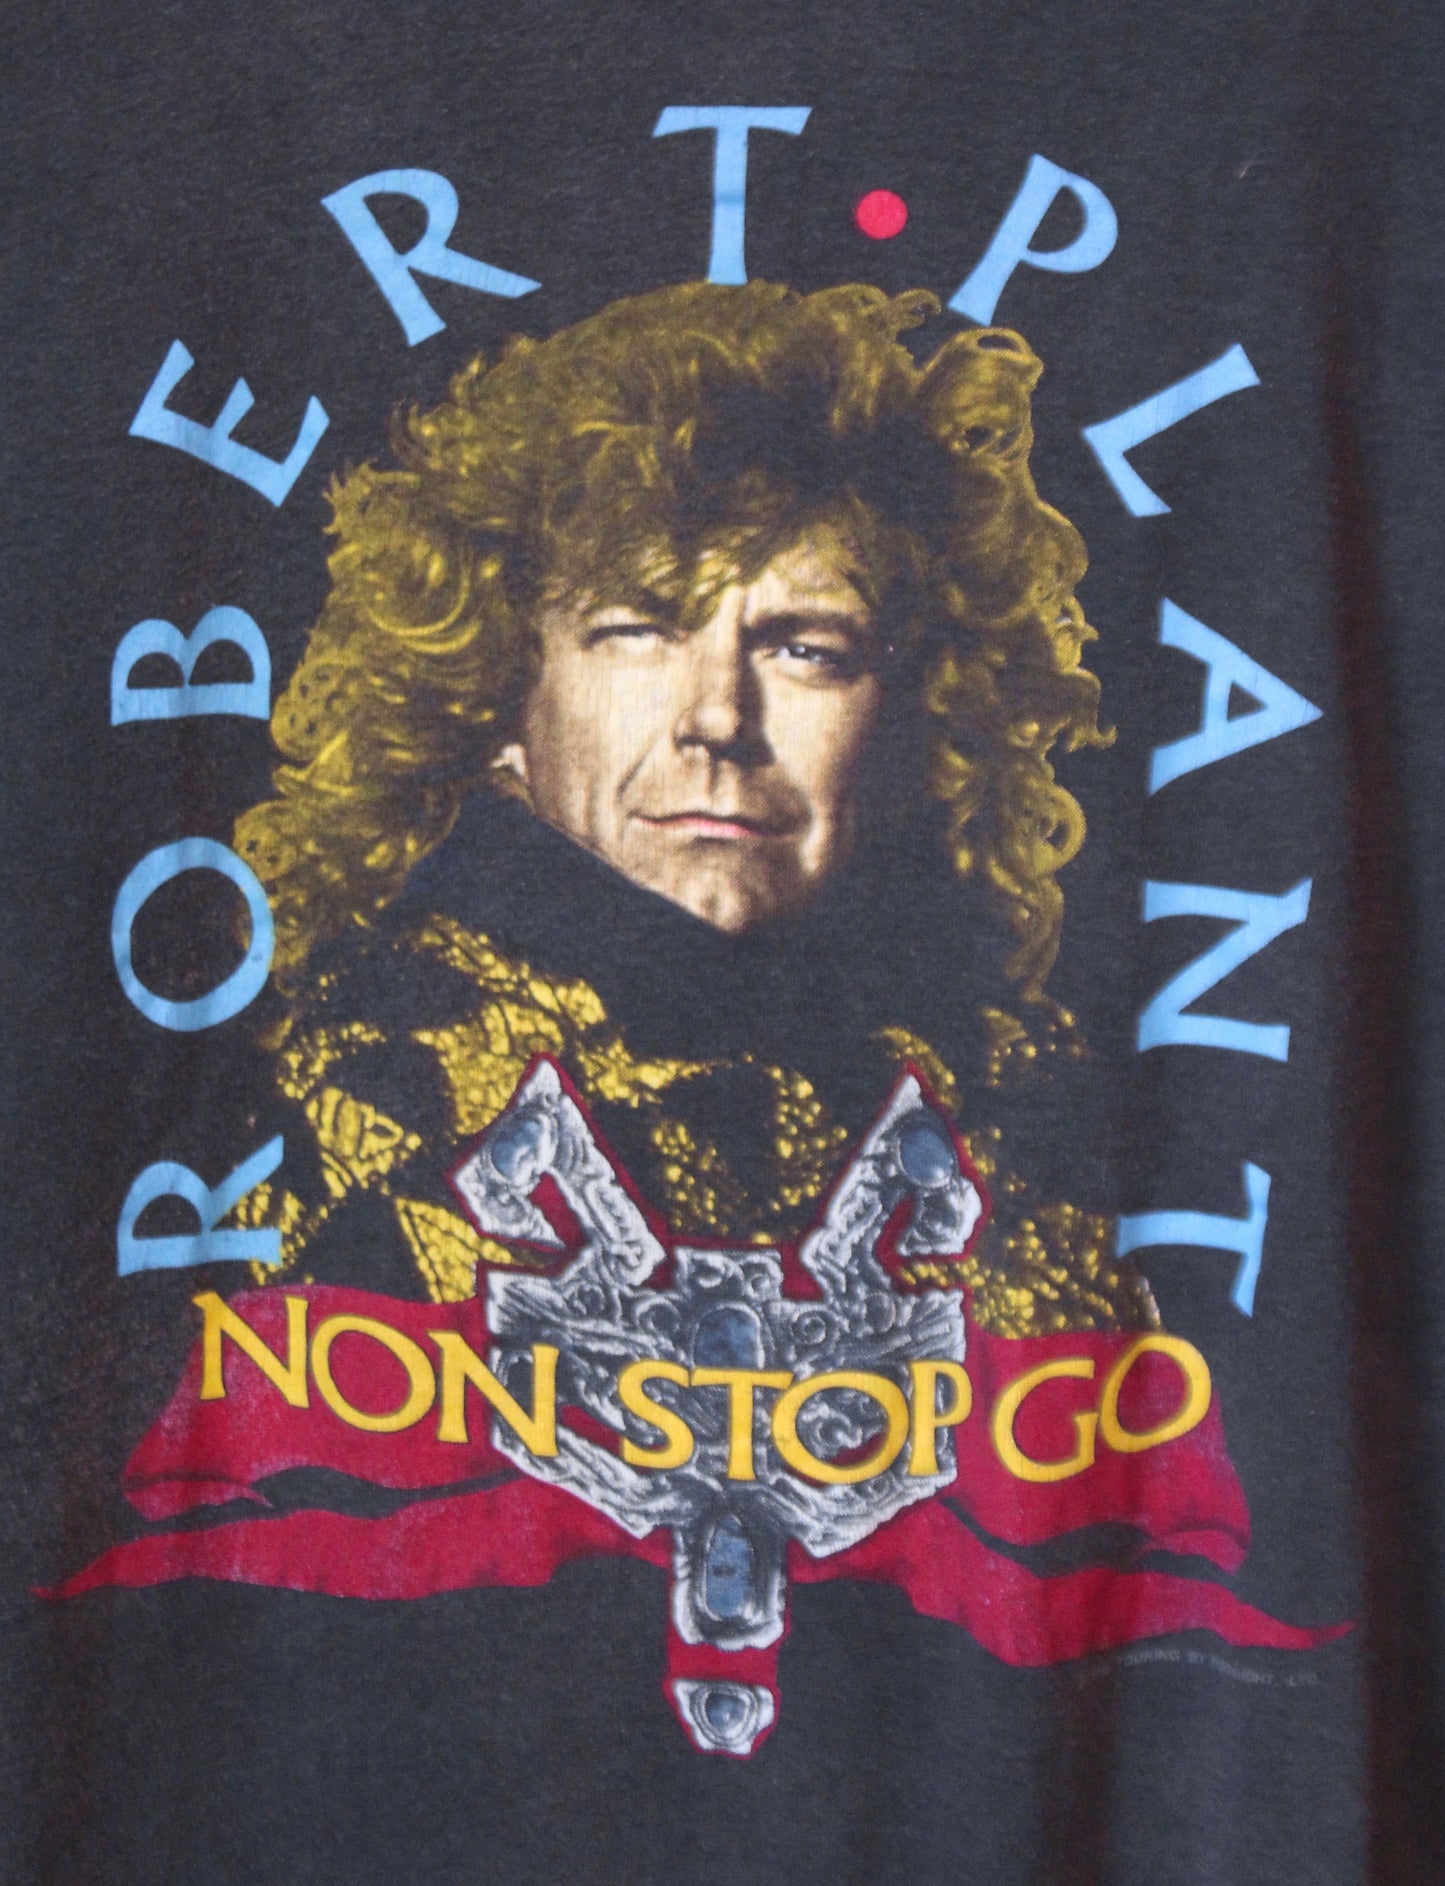 Vintage Robert Plant Concert T Shirt Non Stop Go 1988 Large